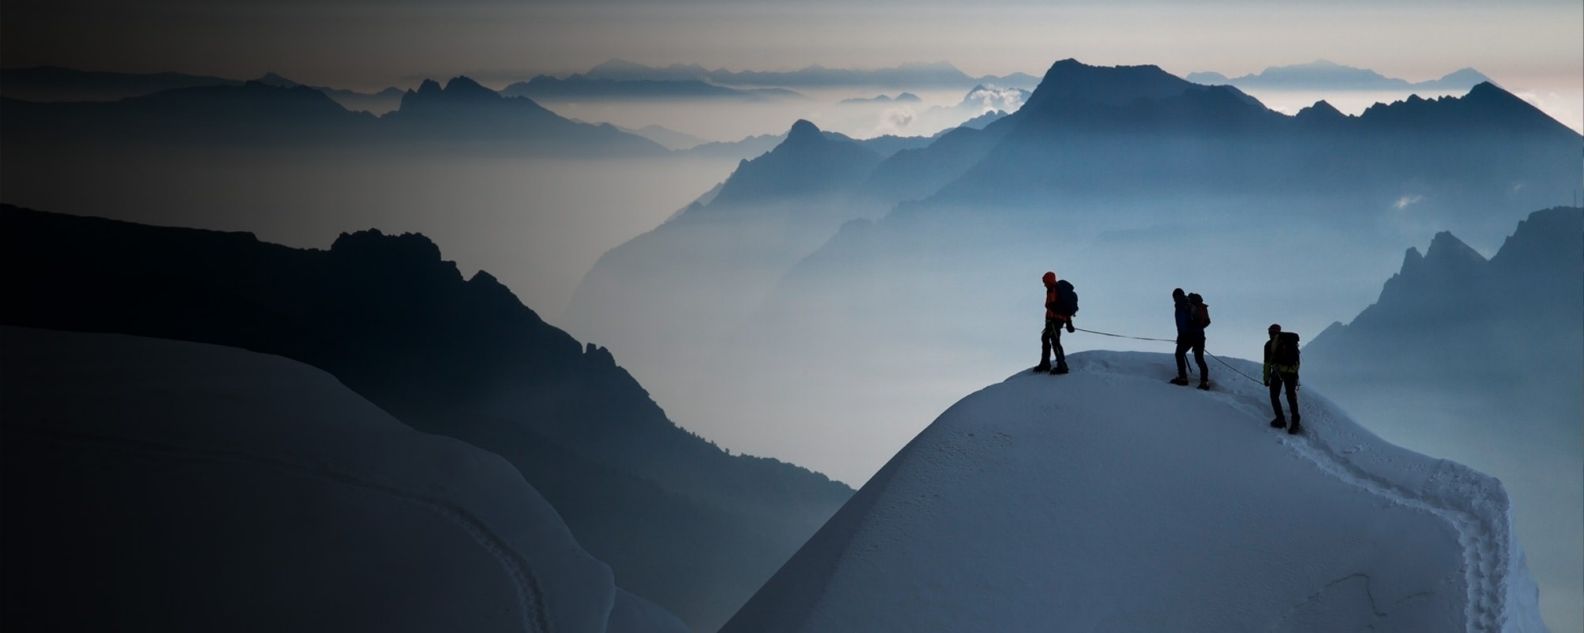 tre alpinisti in piedi sulla cima di una montagna coperta di neve 